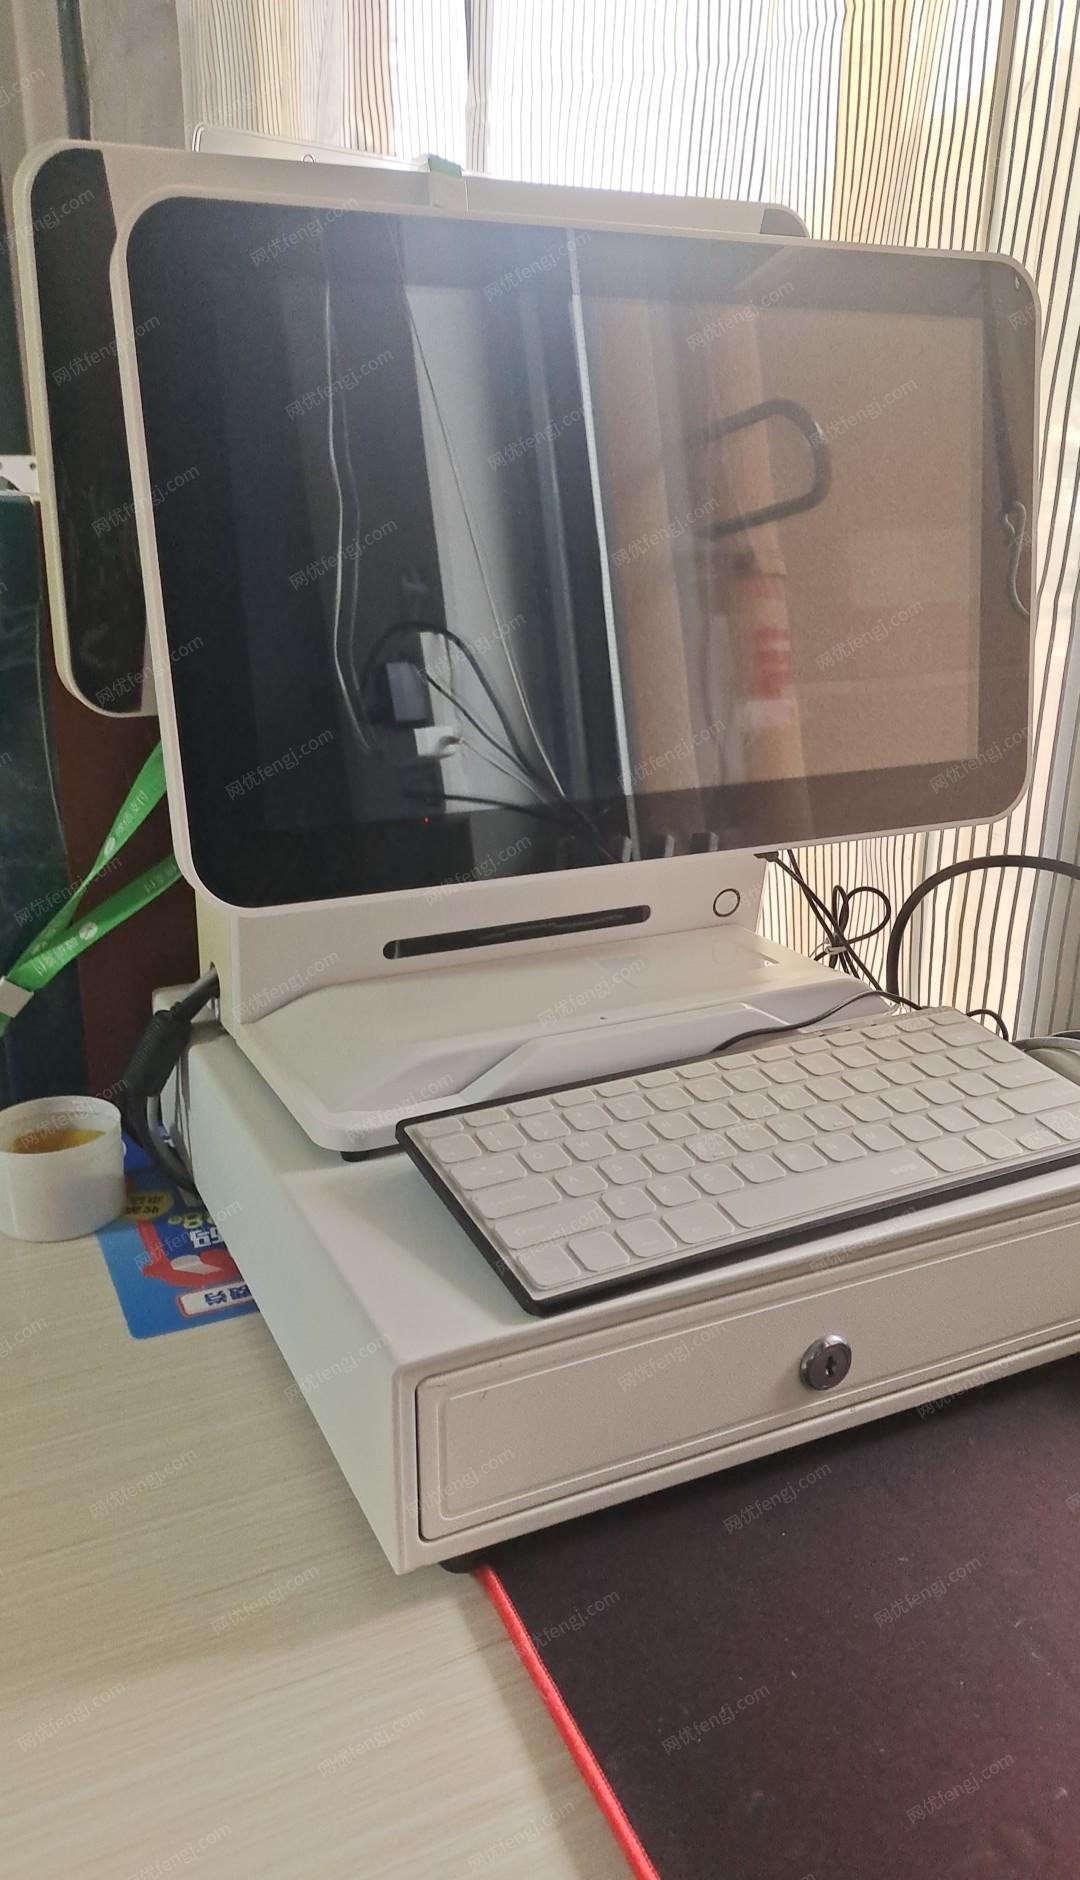 江西南昌本人有一套干洗店专用设备全套转让，石油干洗机和水洗带烘干机）收银电脑，